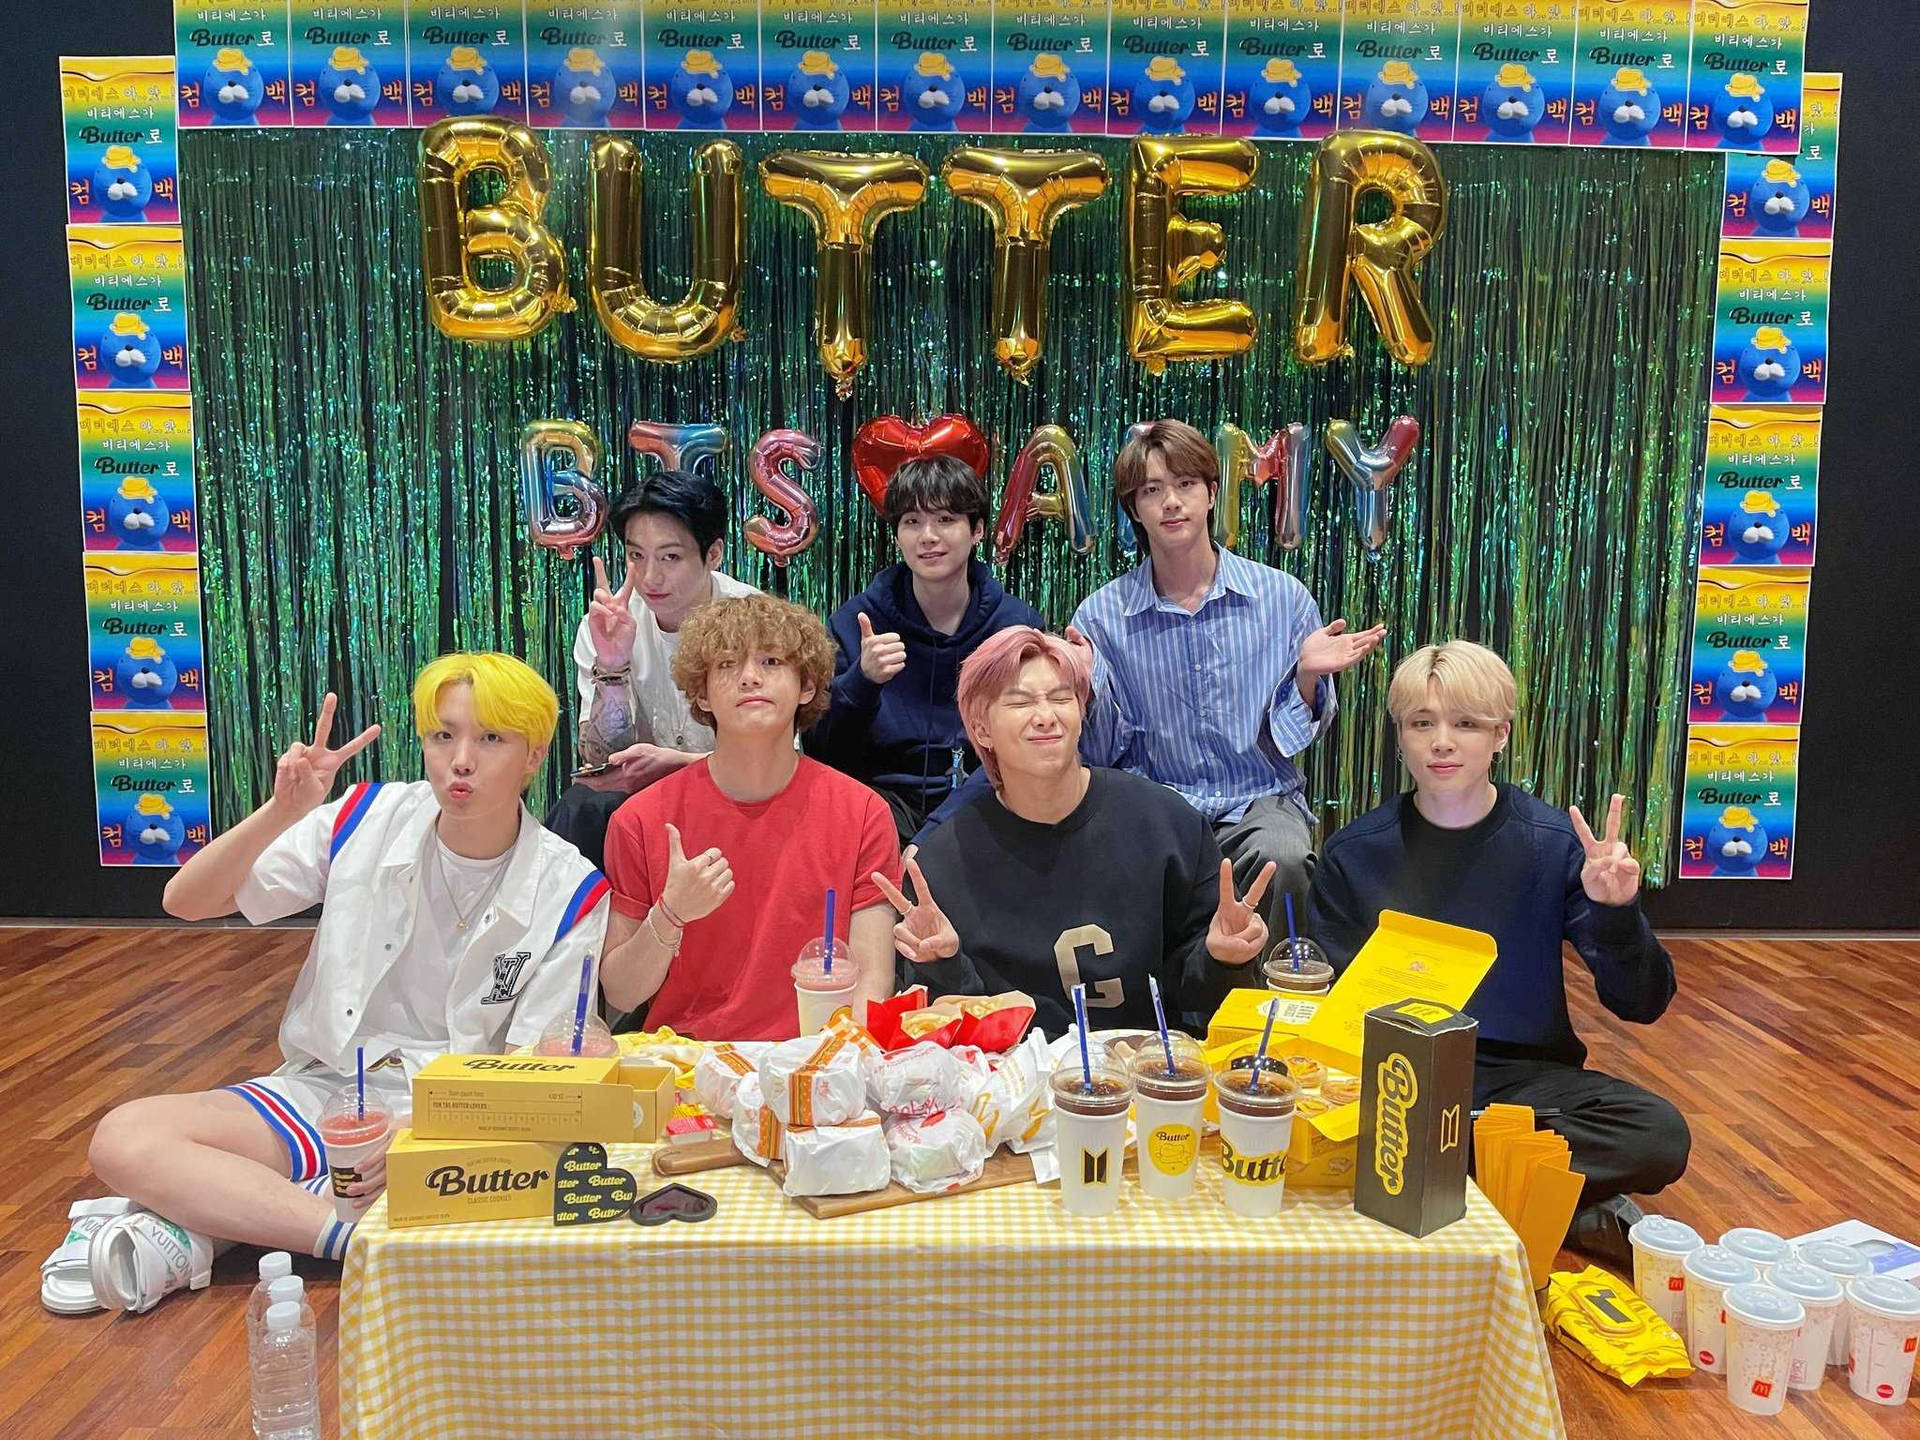 BTS Butter Comeback VLive Wallpaper